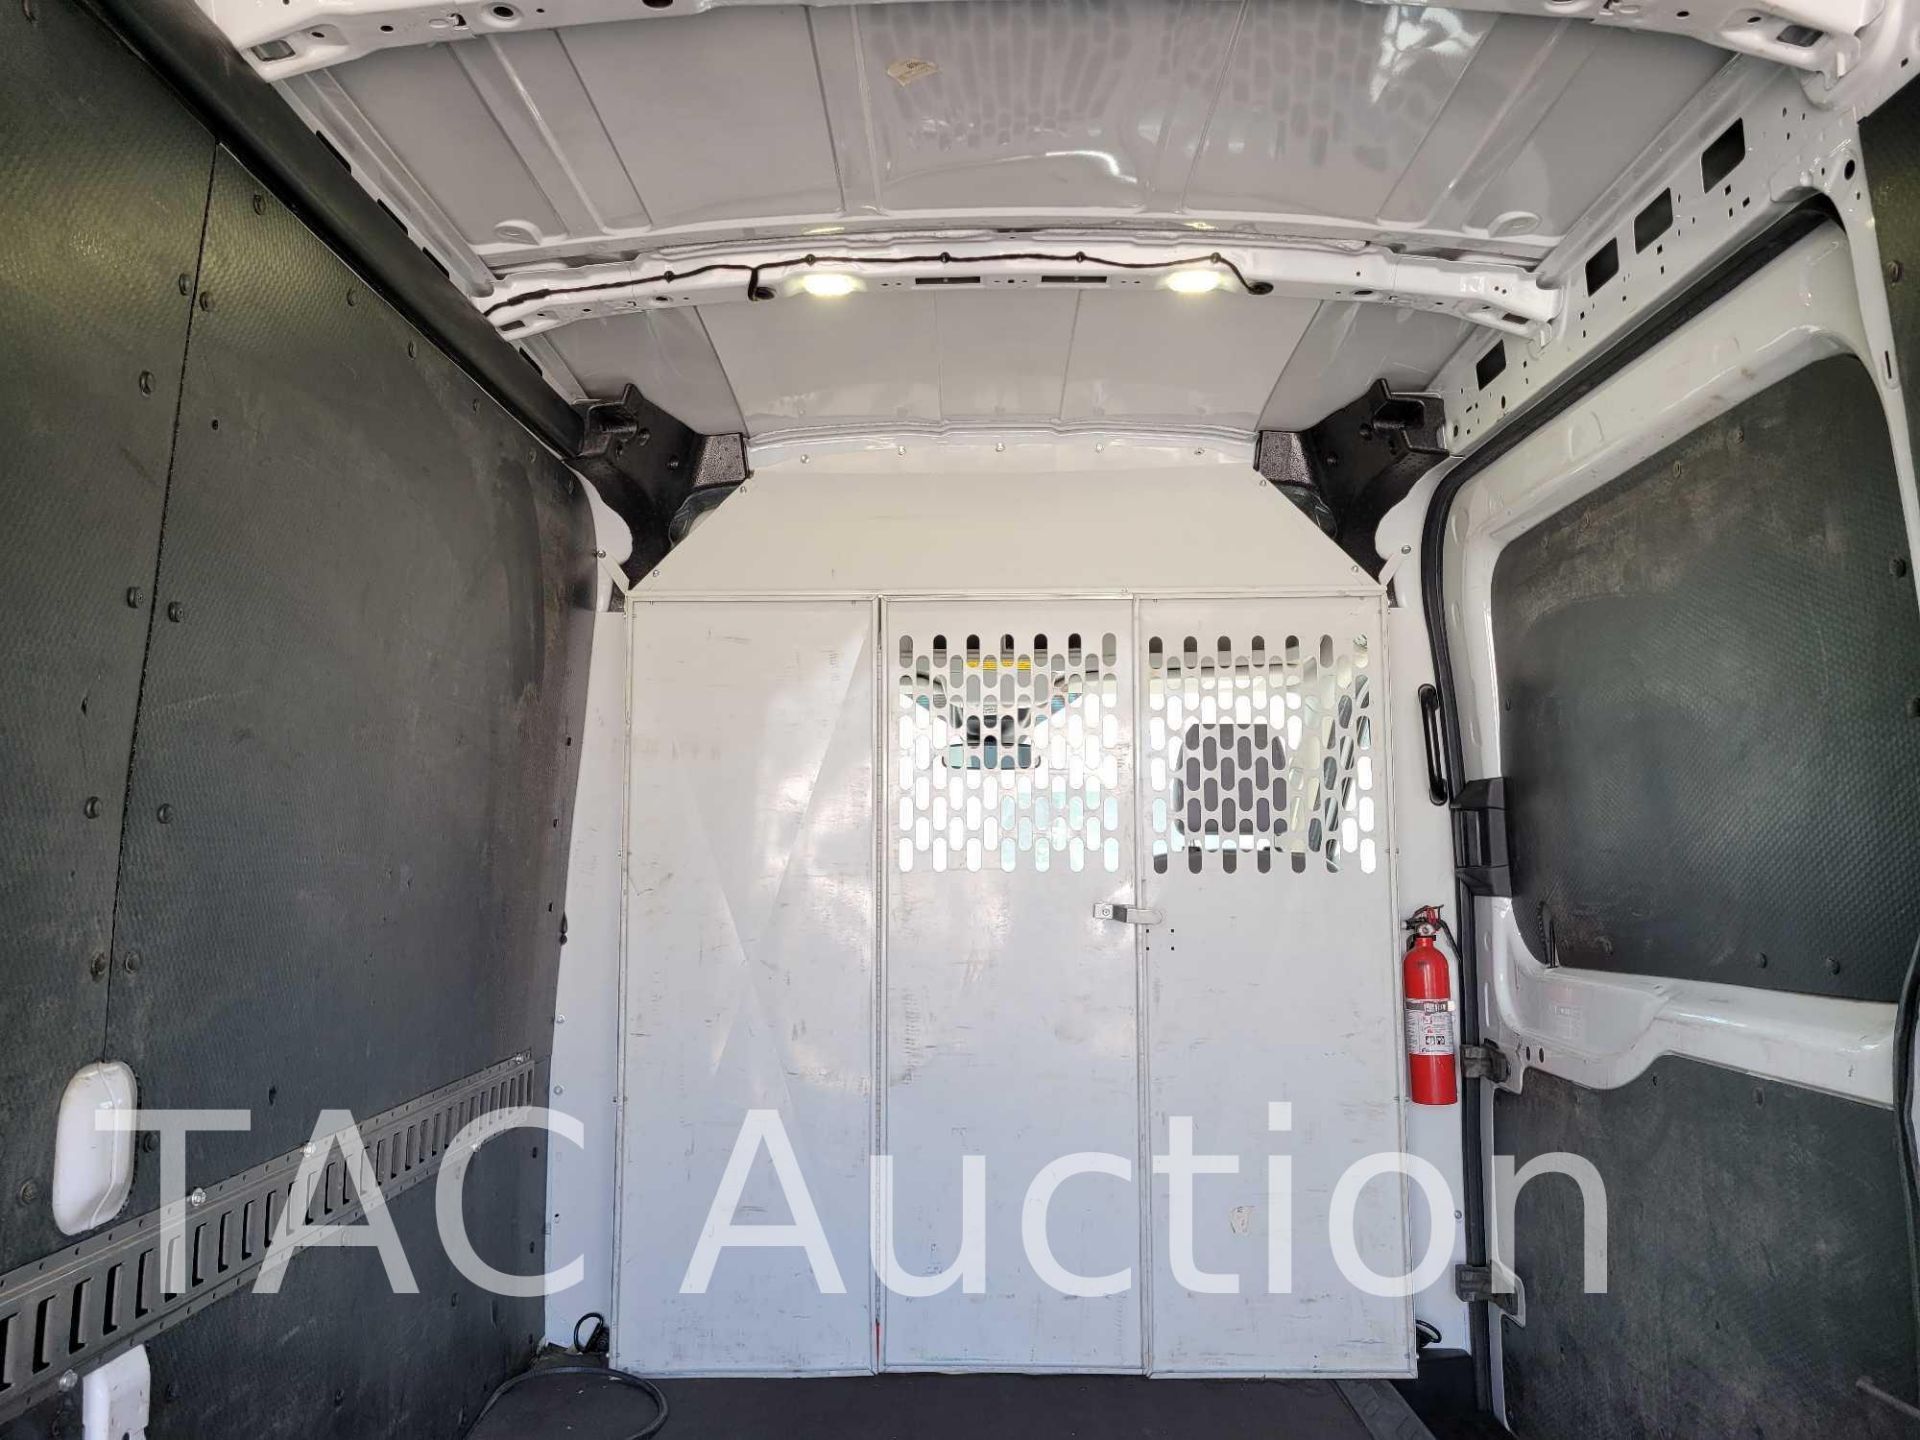 2018 Ford Transit 150 Cargo Van - Image 29 of 47